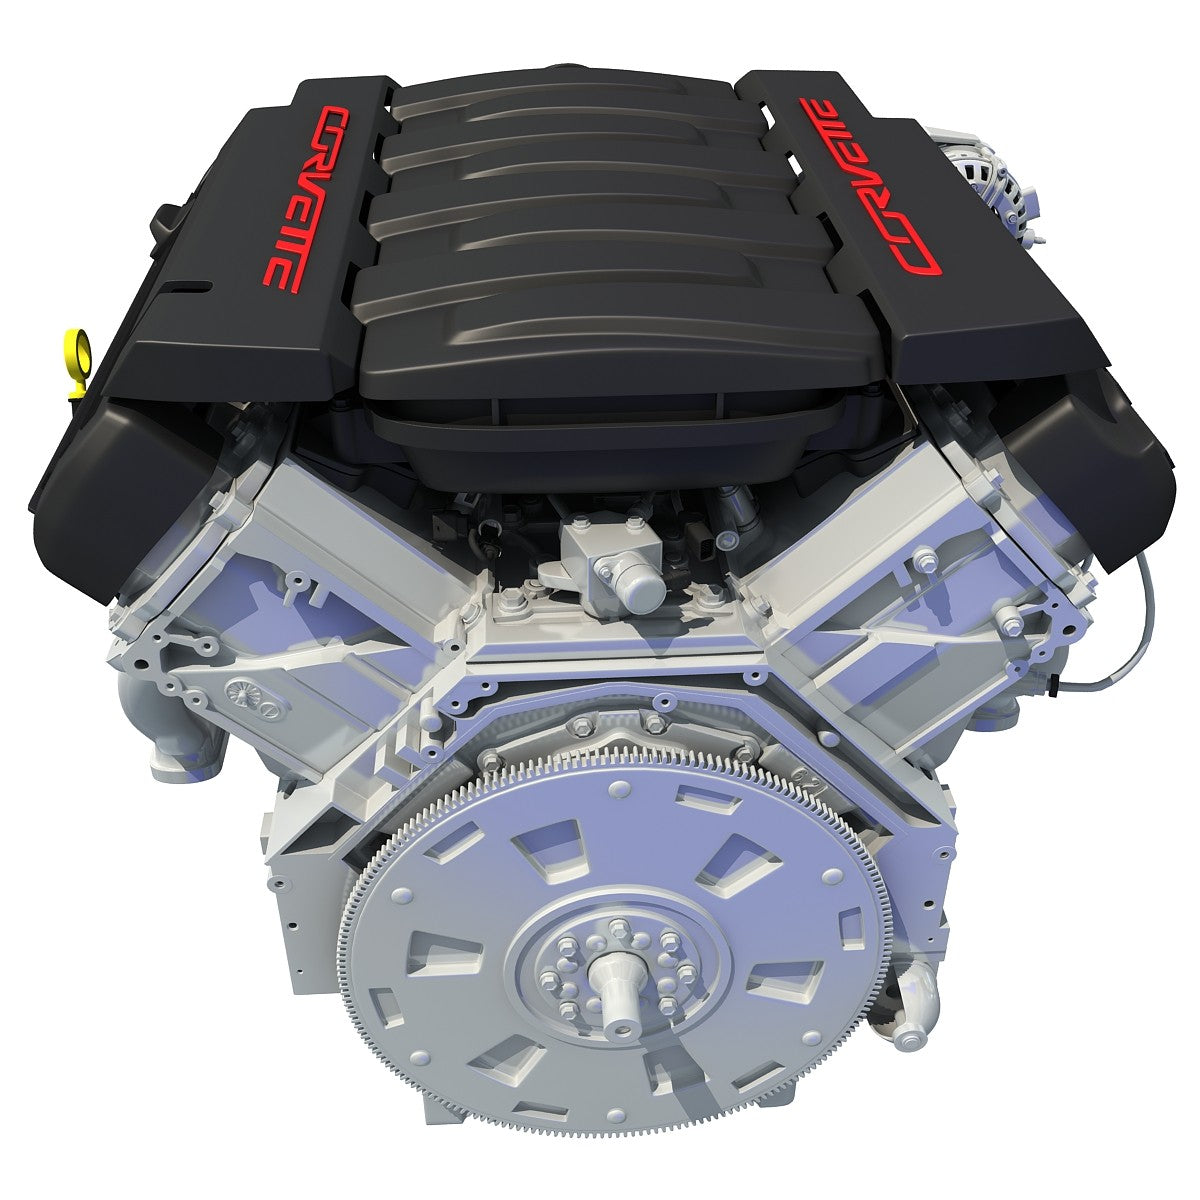 V8 Engine Chevrolet Corvette Model